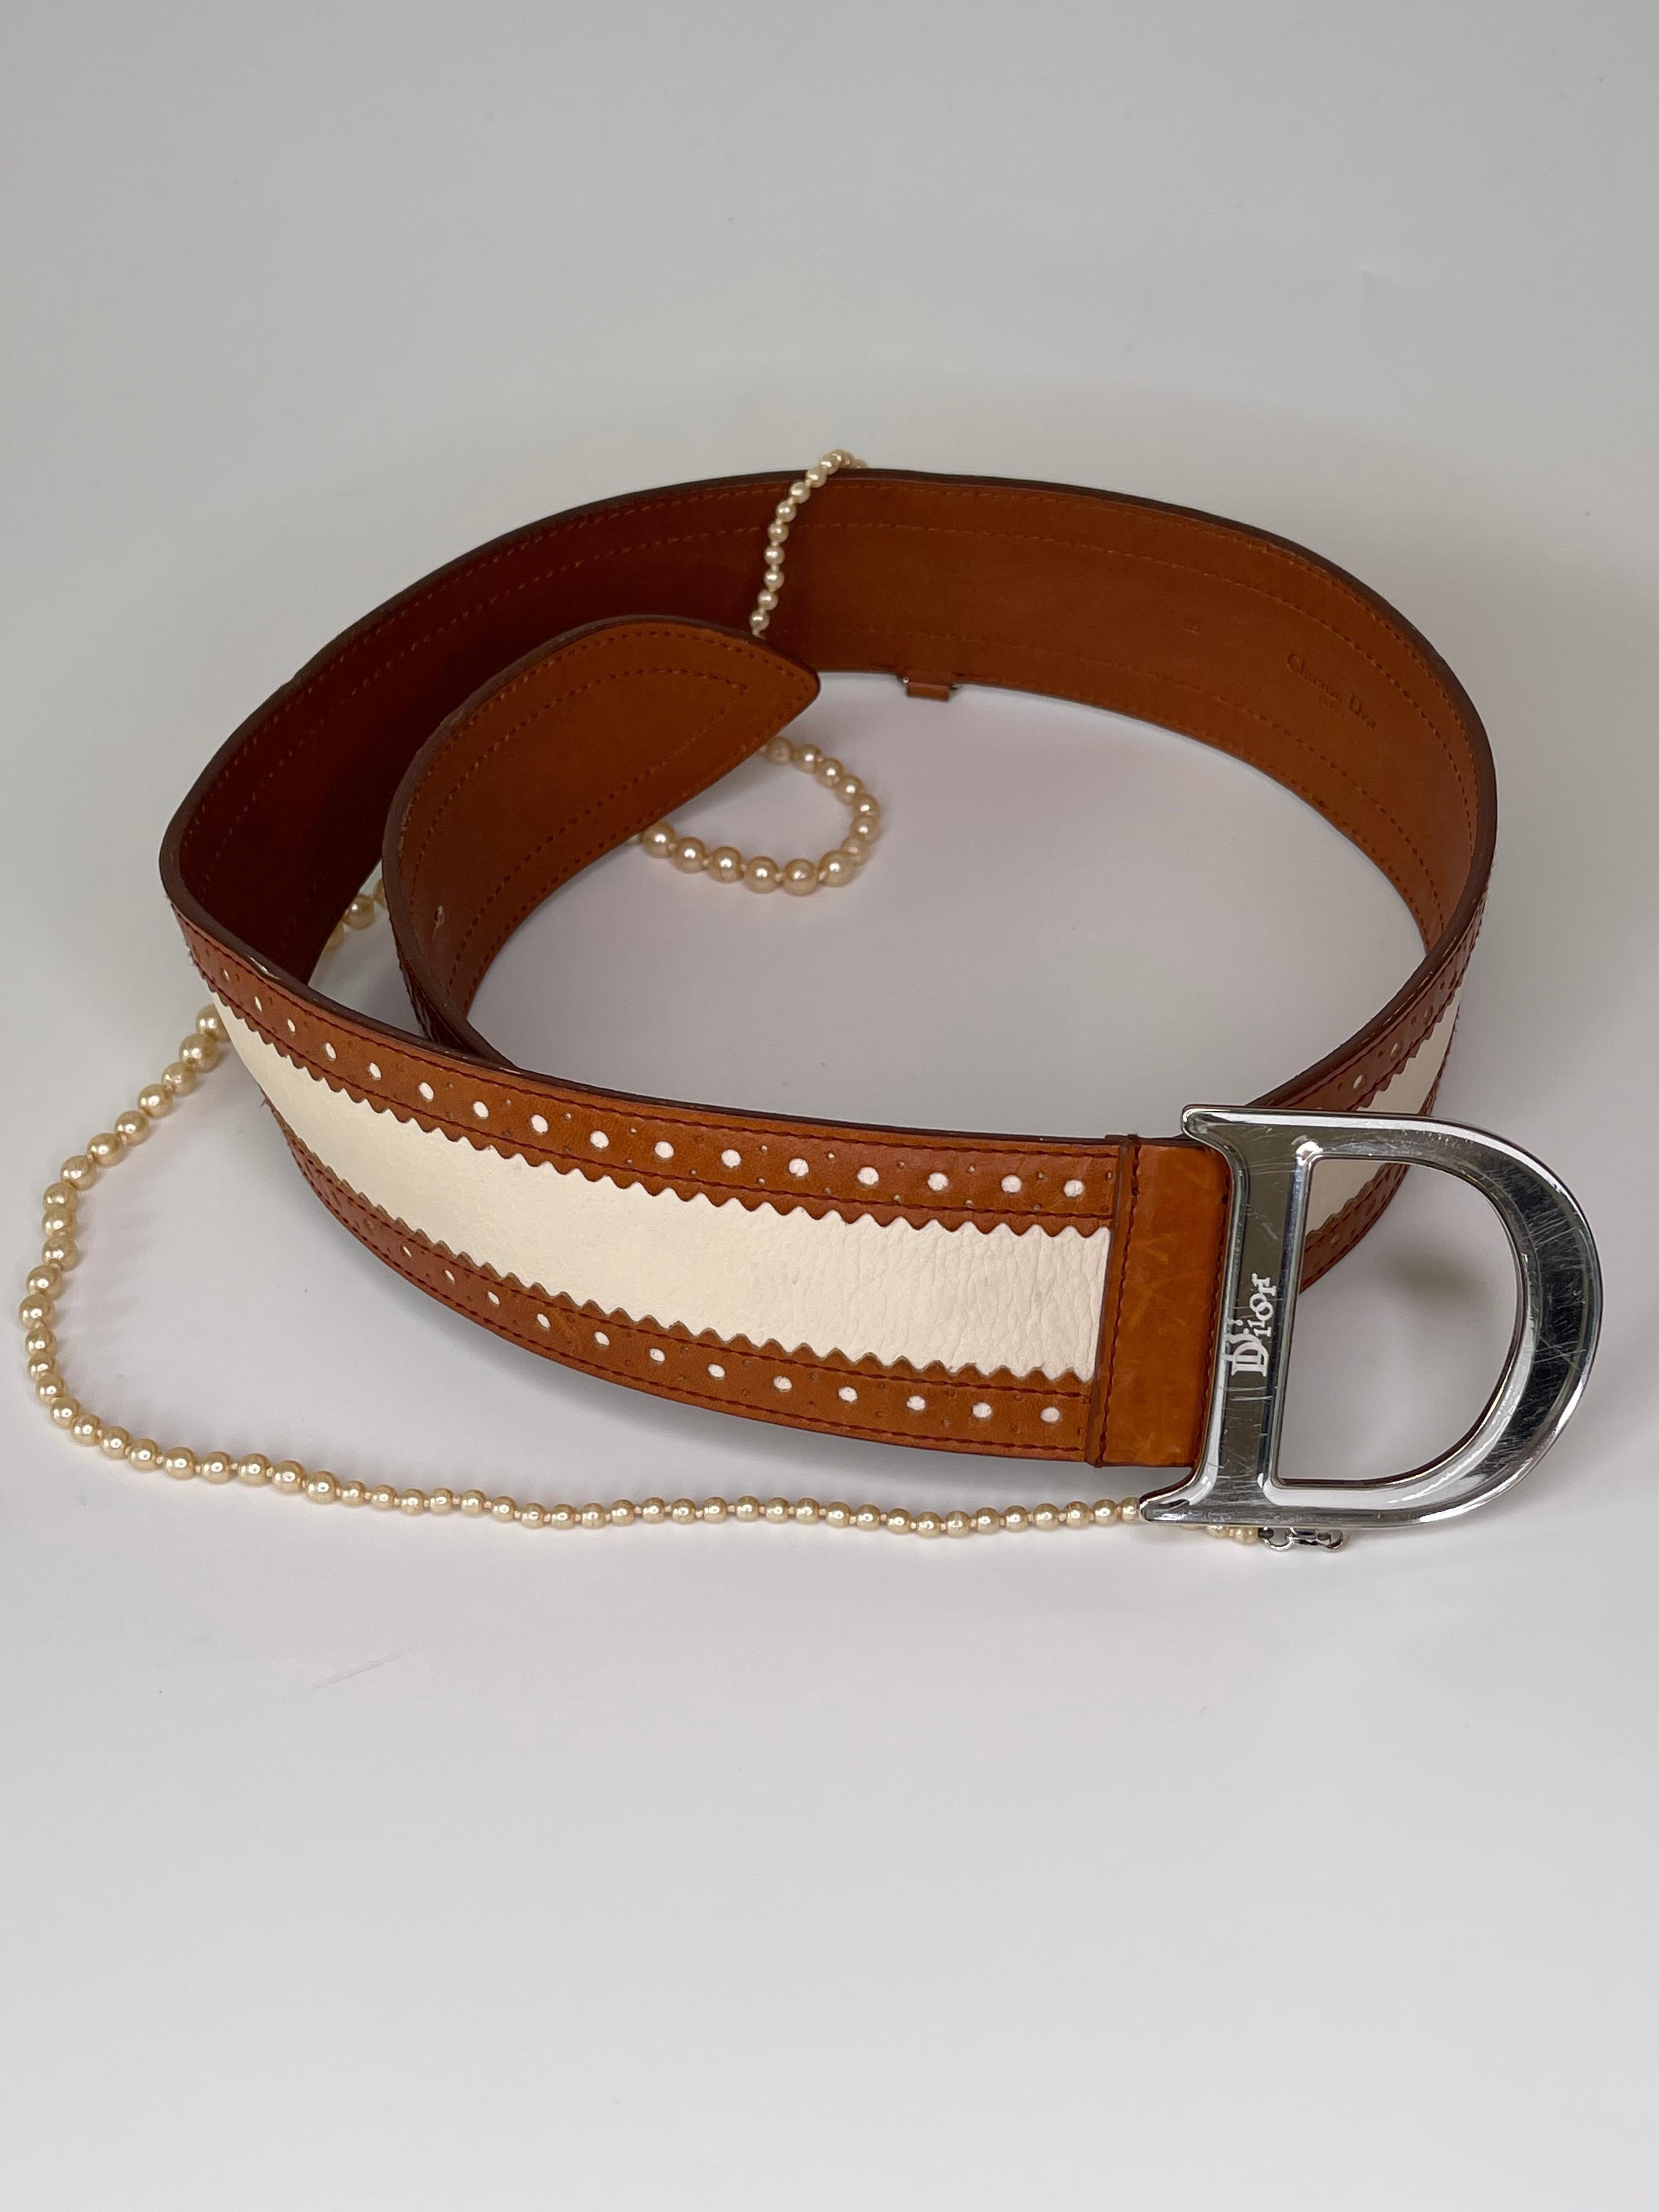 Cette ceinture Dior Detective Pearl se compose d'un modèle en cuir à la mode, d'une boucle argentée en miroir et d'une chaîne en perles.

COULEUR : Beige, boucle miroir argentée 
MATERIAL : Cuir, chaîne en fausses perles
CODE DE L'ÉLÉMENT : 15